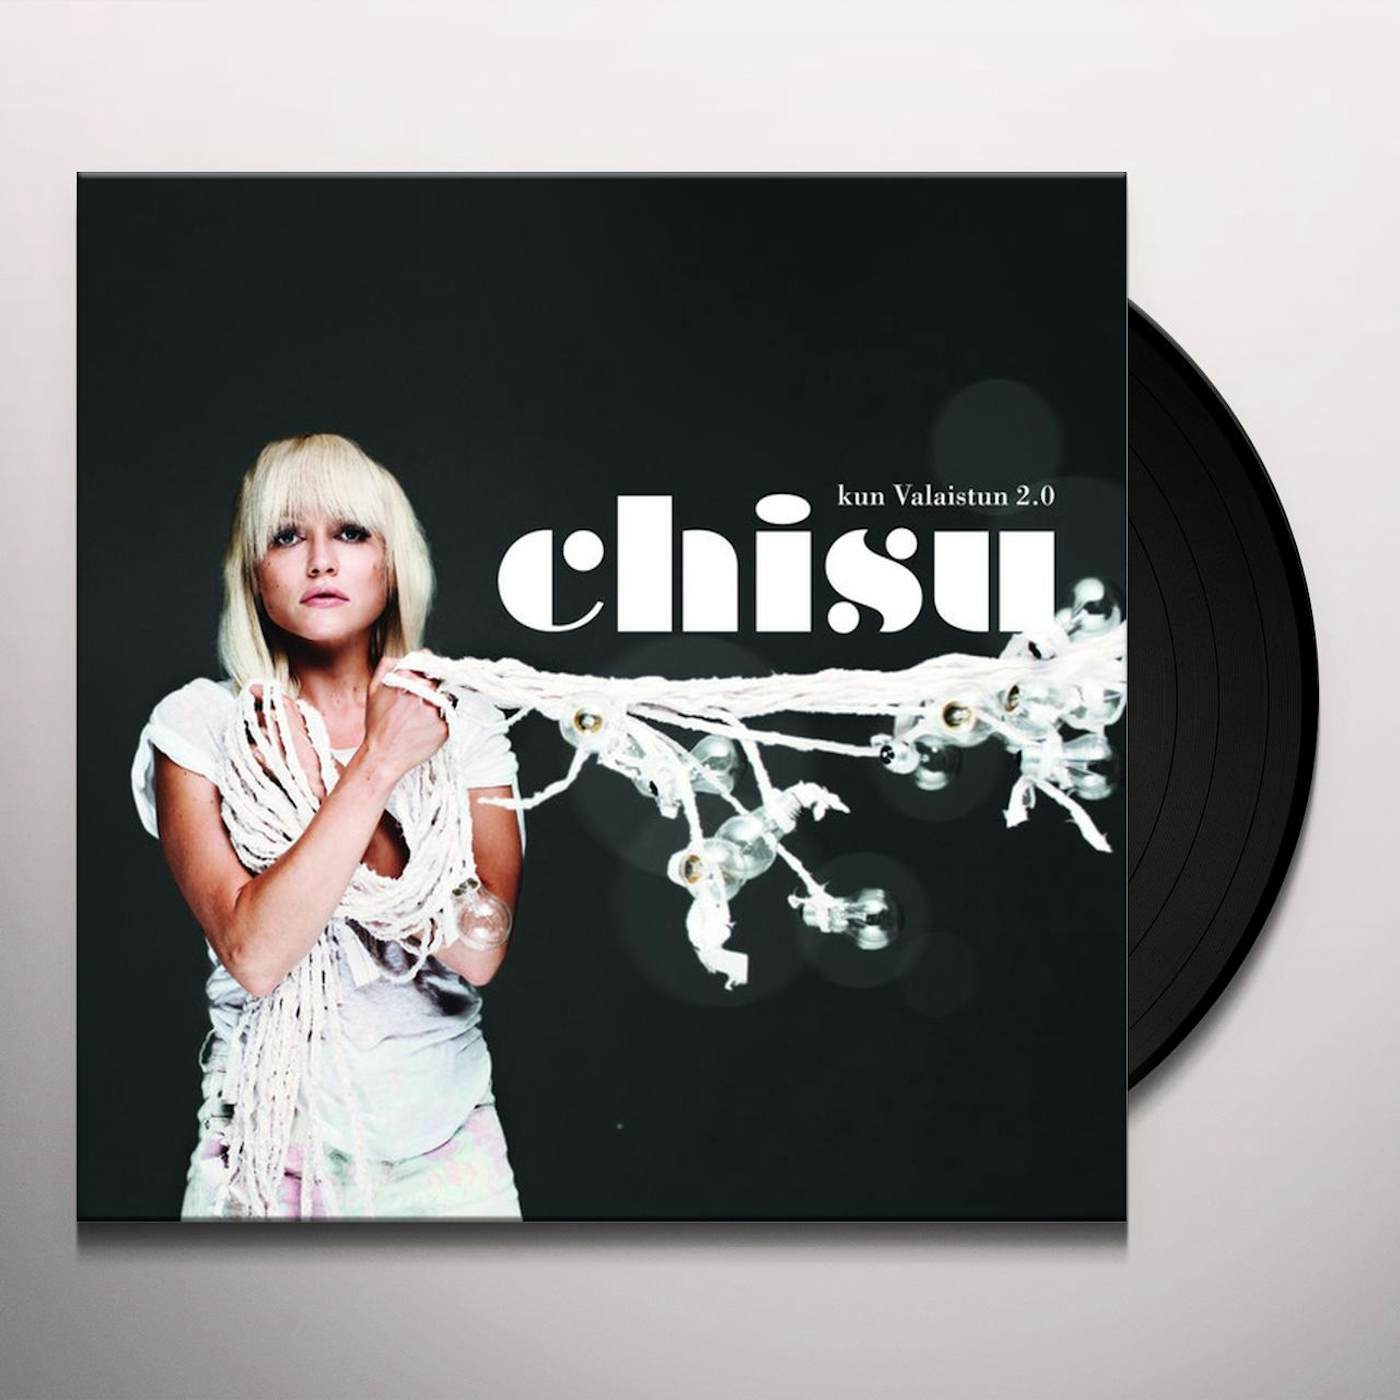 Chisu Kun valaistun 2.0 Vinyl Record